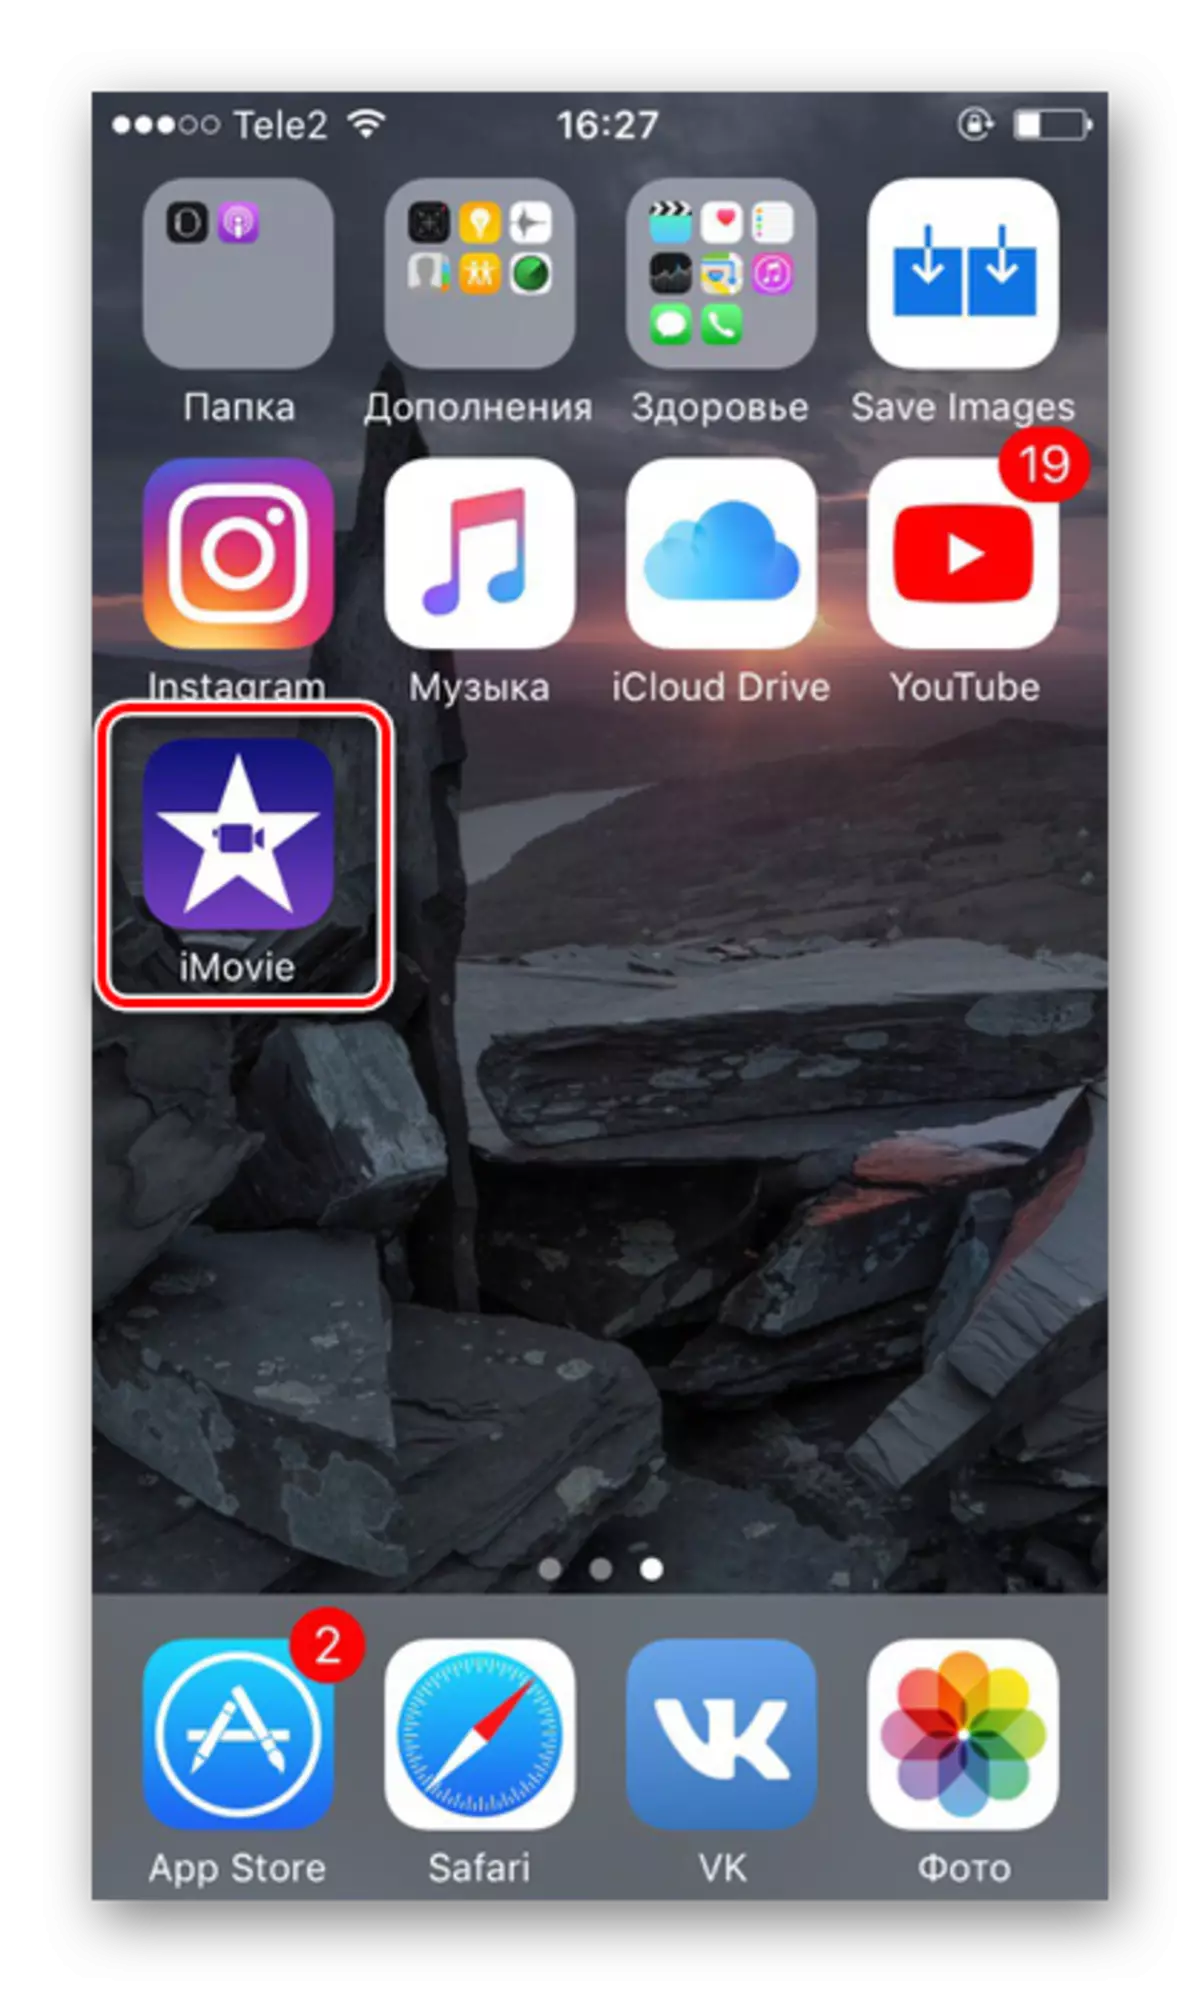 Pembukaan App Imovie di iPhone untuk mengenakan muzik pada video